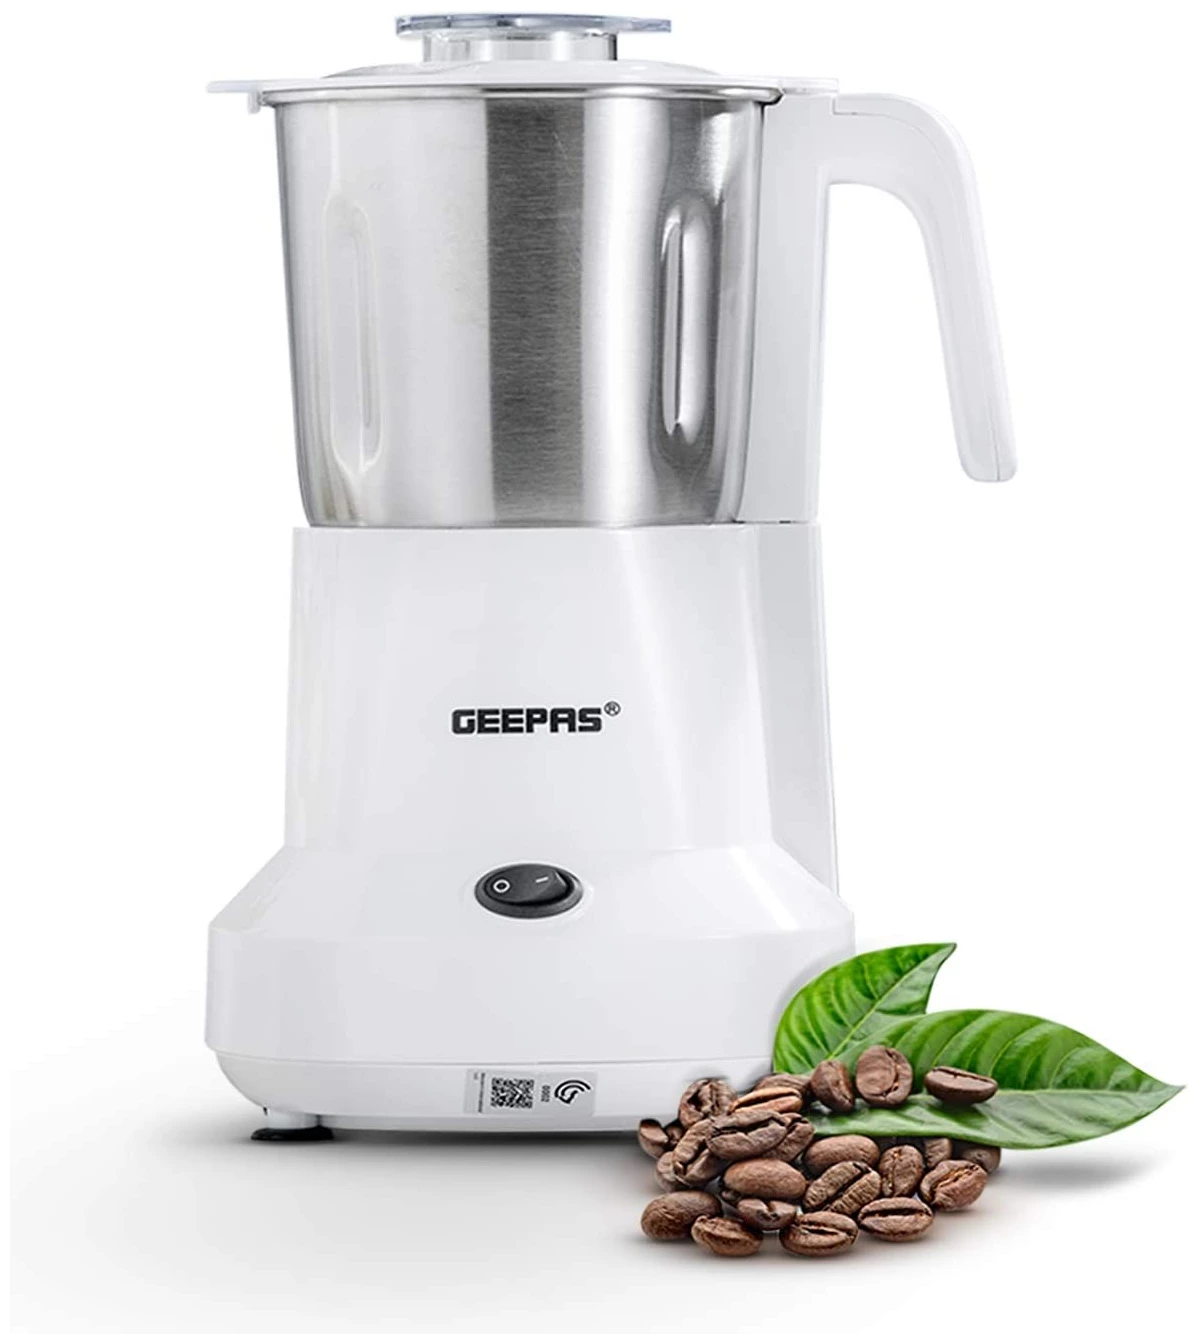 GEEPAS Coffee Grinder GCG6105 | Coffee maker | Kitchen Appliances